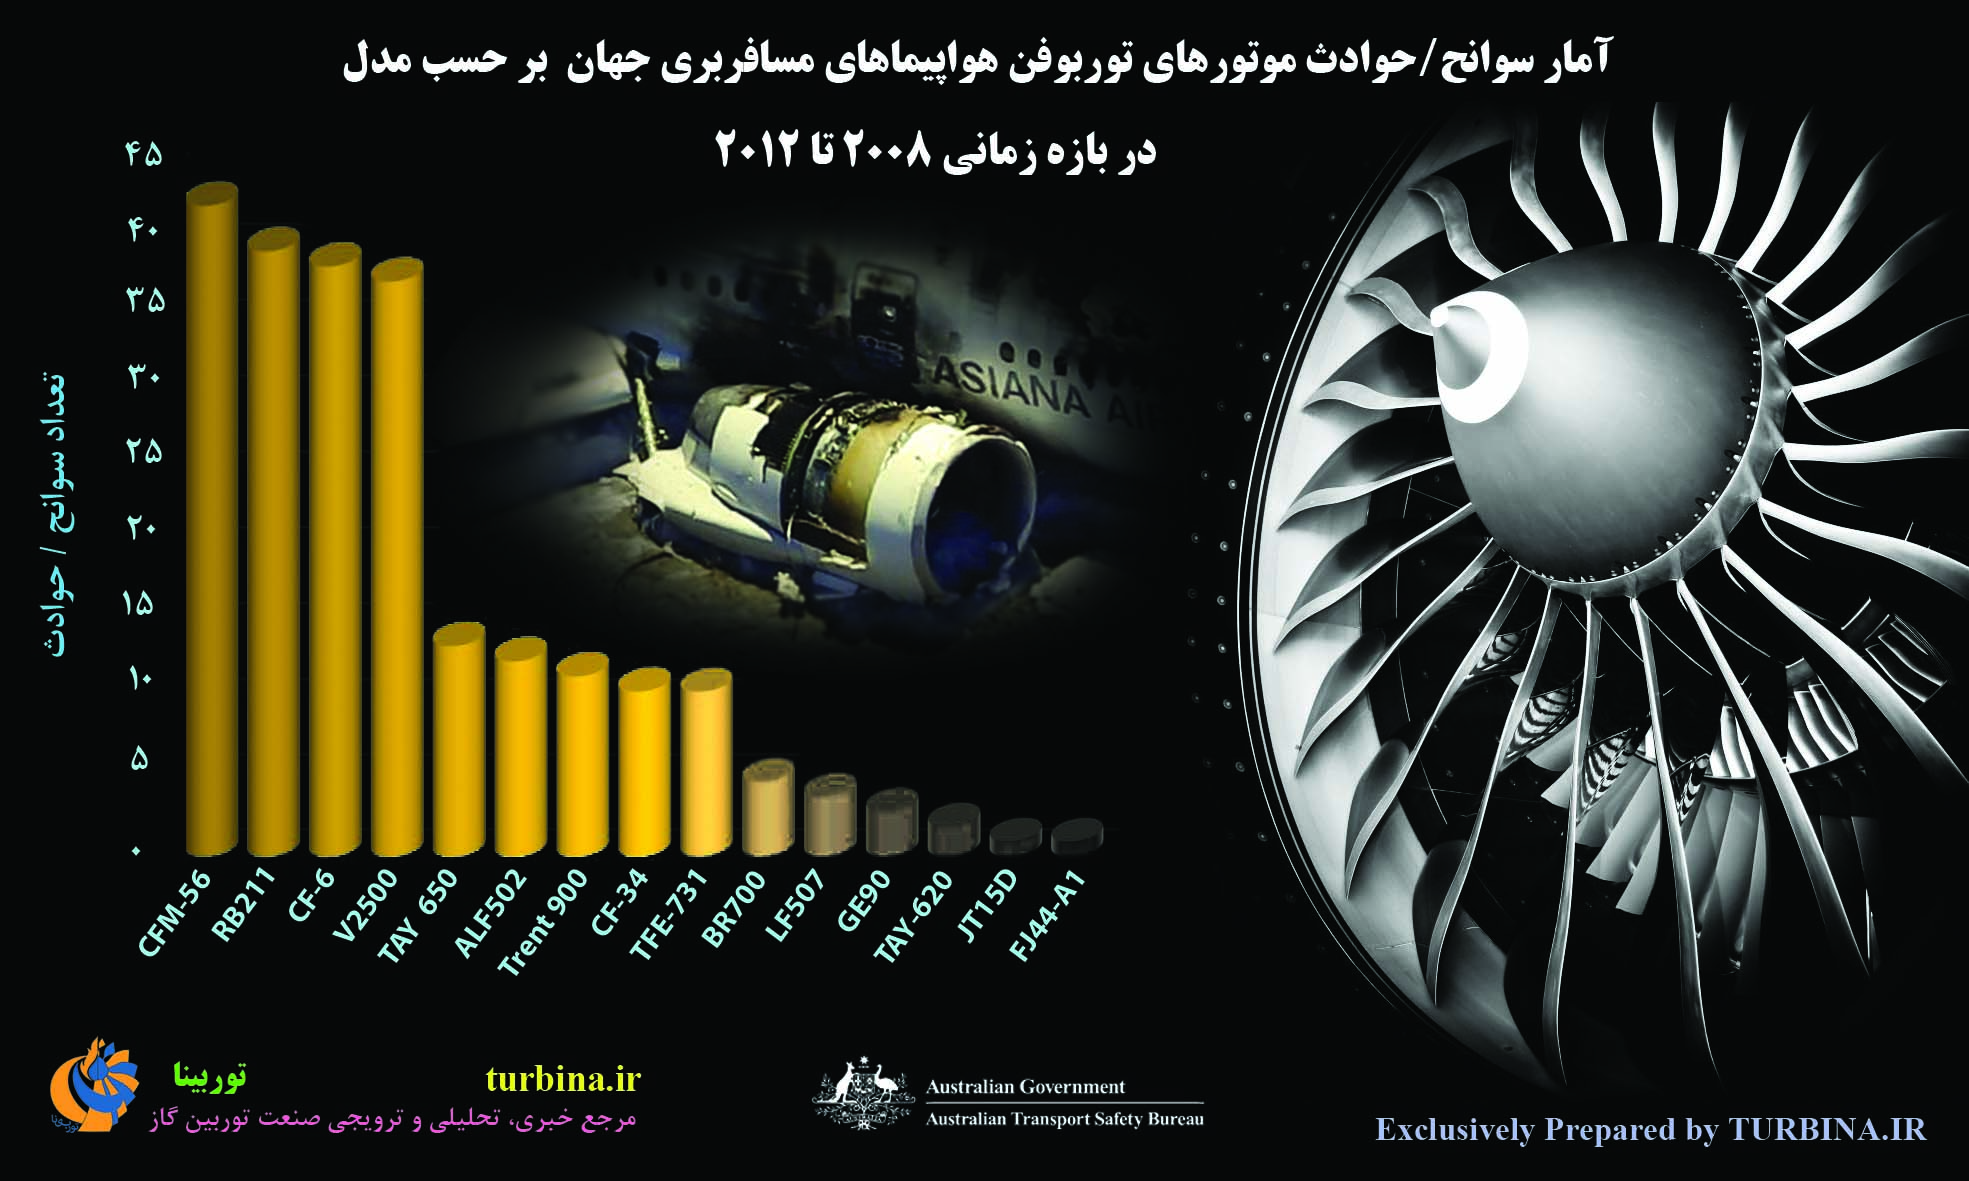 آمار سوانح/حوادث موتورهای توربوفن هواپیماهای مسافربری جهان بر حسب مدل